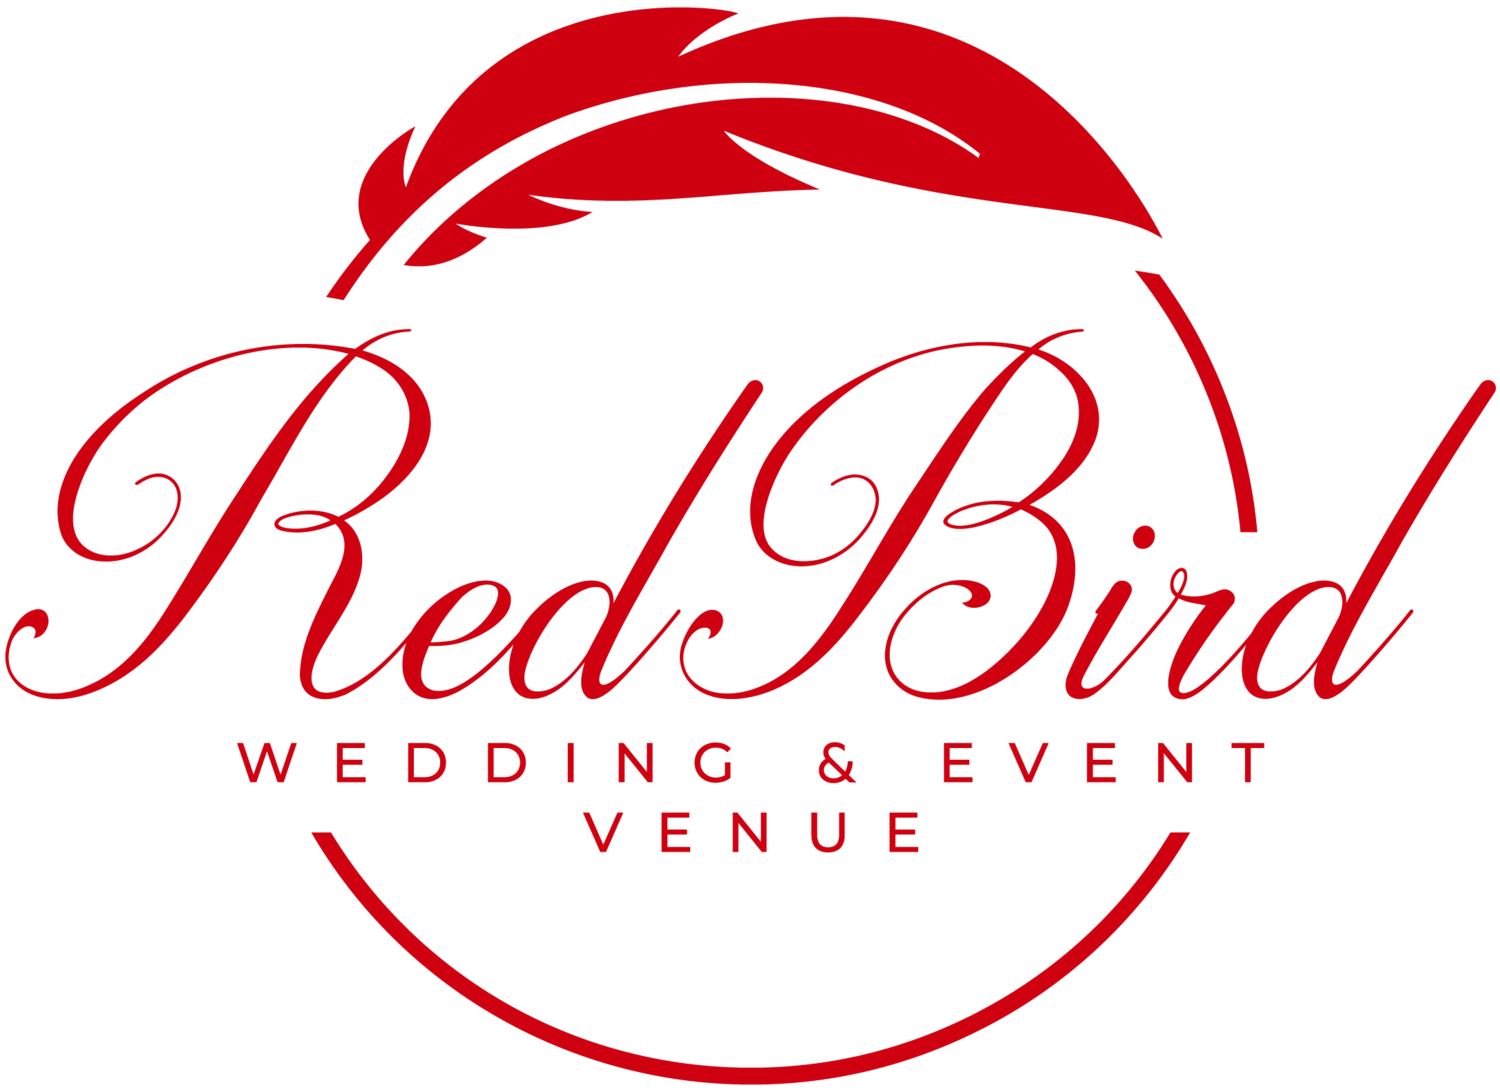 RedBird Venue